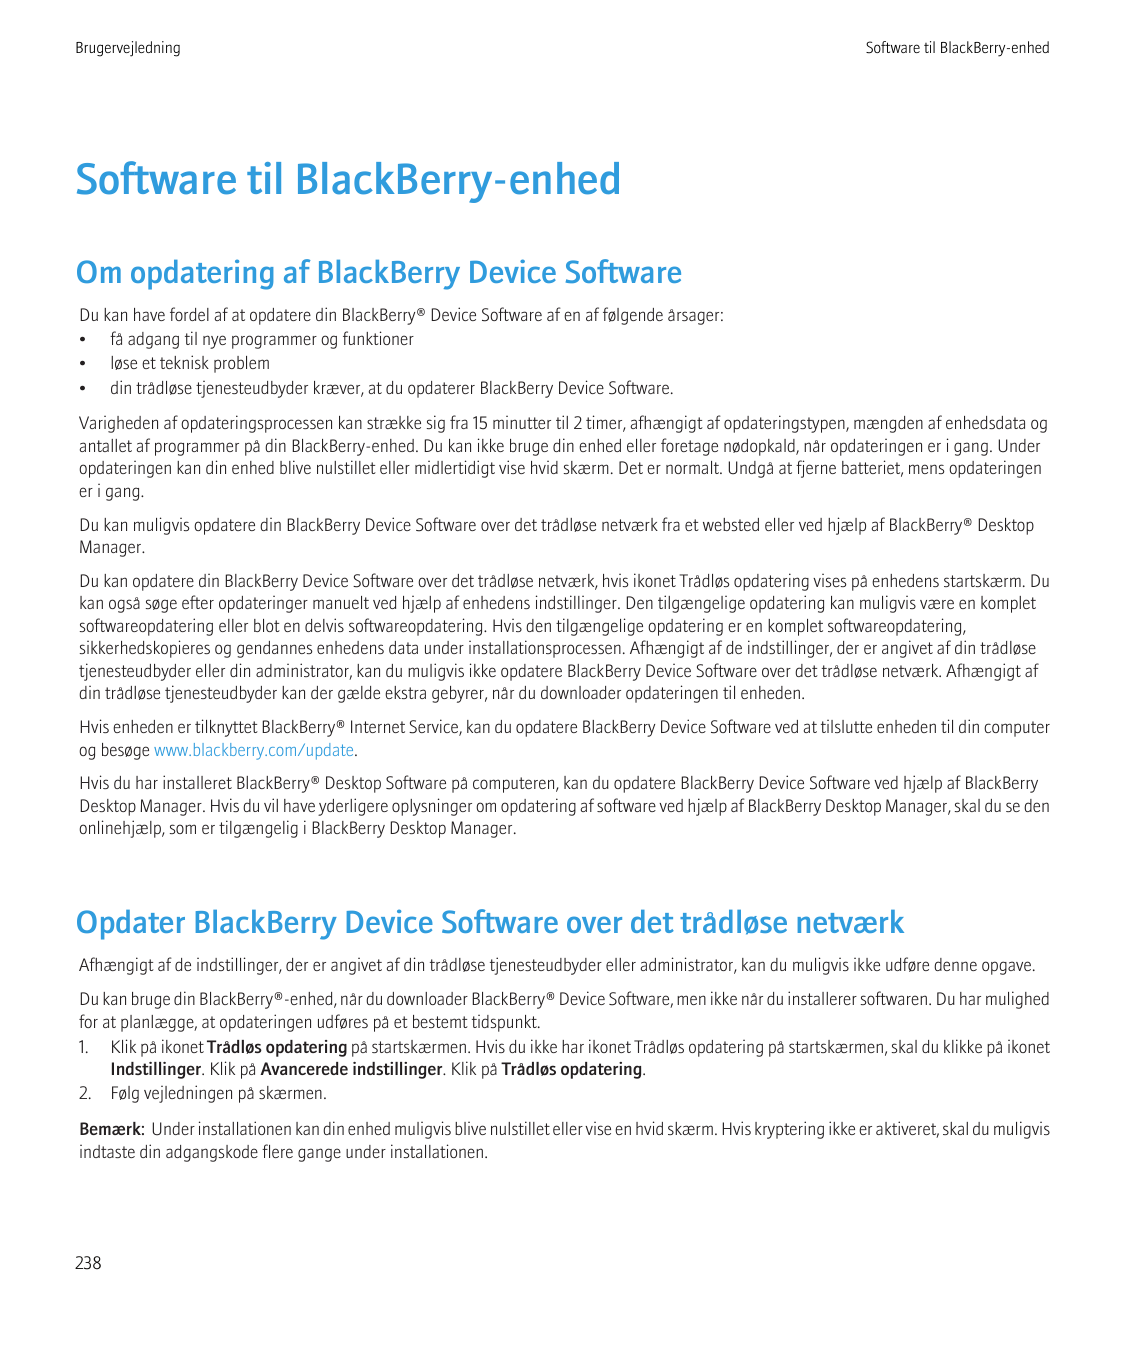 BrugervejledningSoftware til BlackBerry-enhedSoftware til BlackBerry-enhedOm opdatering af BlackBerry Device SoftwareDu kan have